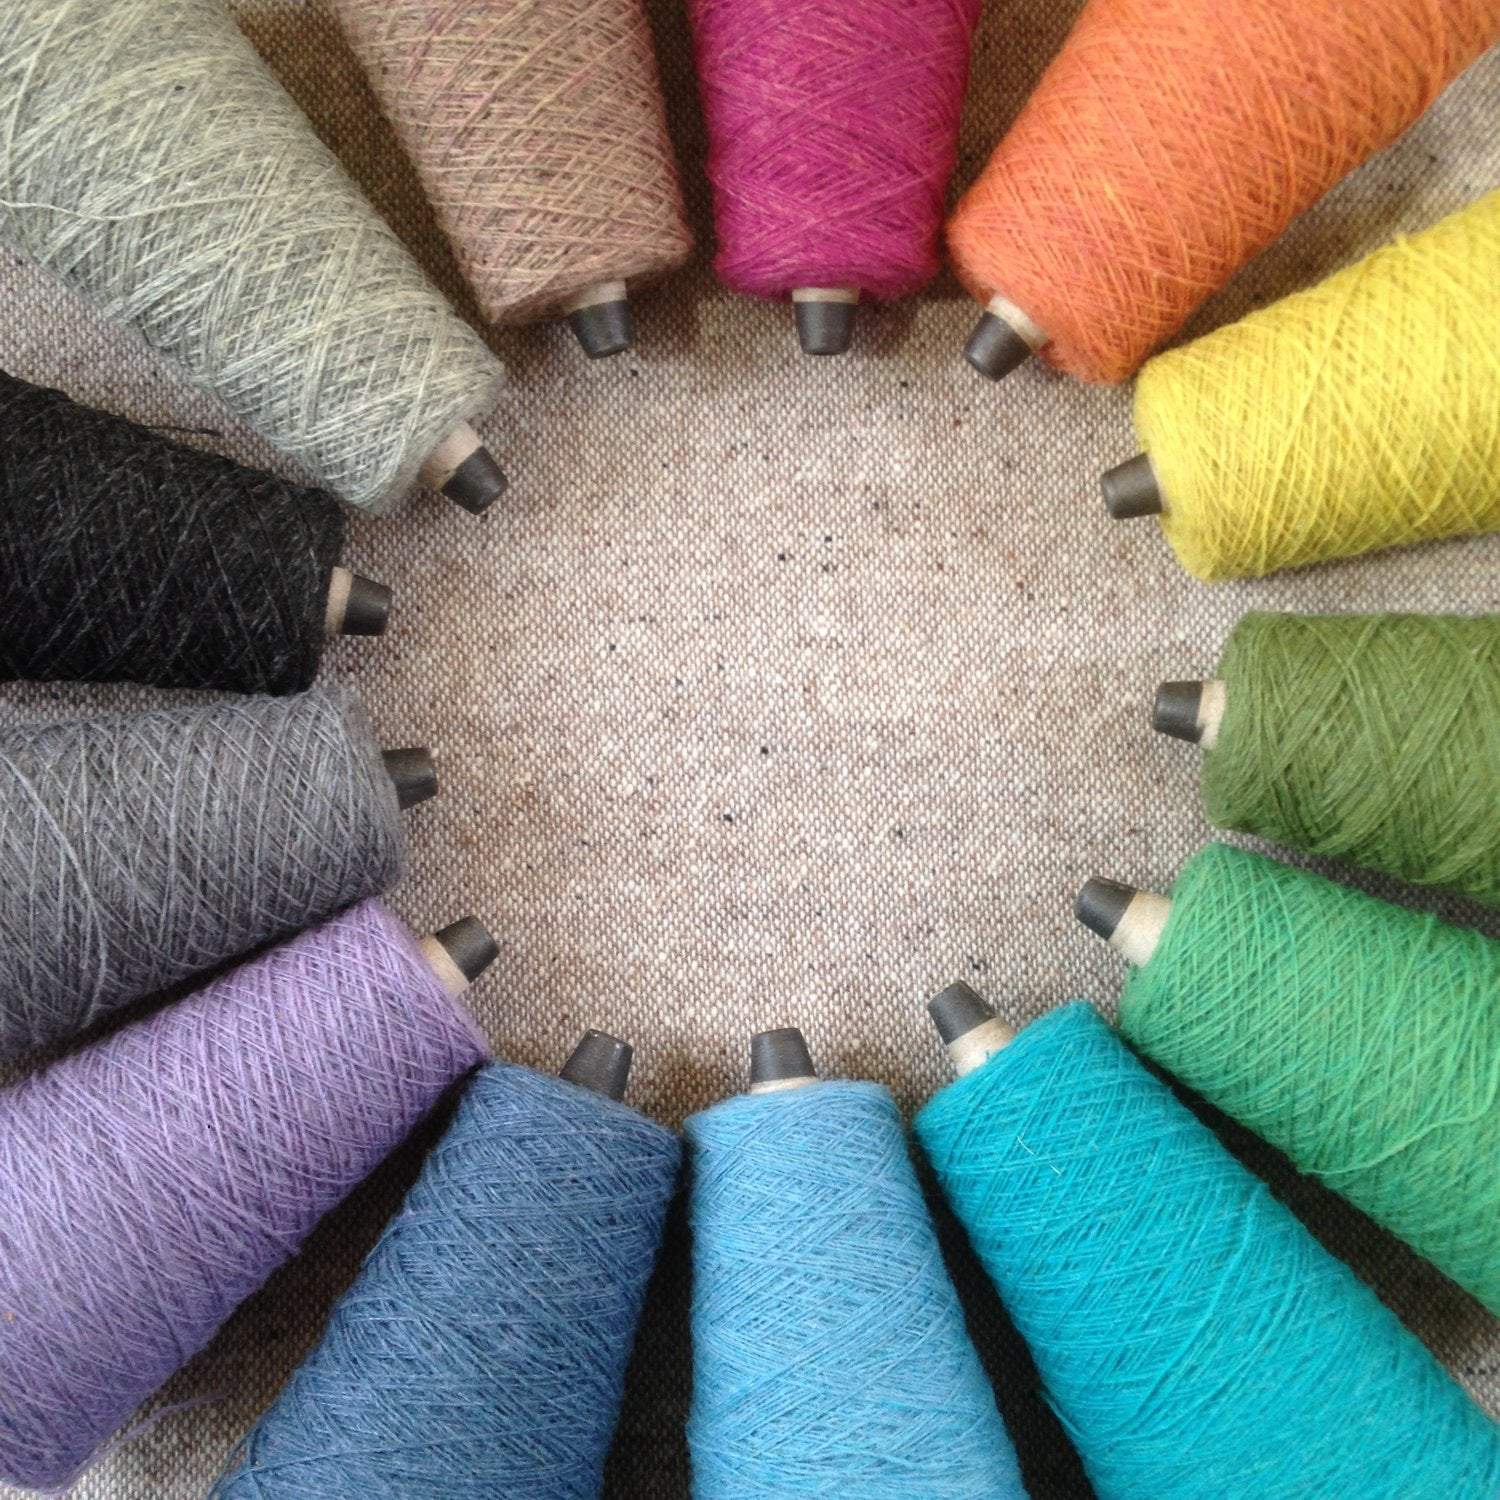 Yarn Pack / Yarn Kit / %100 Cotton Yarns / 7 Pieces Yarn Set / Blue / 100  Gr Each / Punch Needle Yarn / Cotton Amigurumi Yarn / Crochet Yarn 